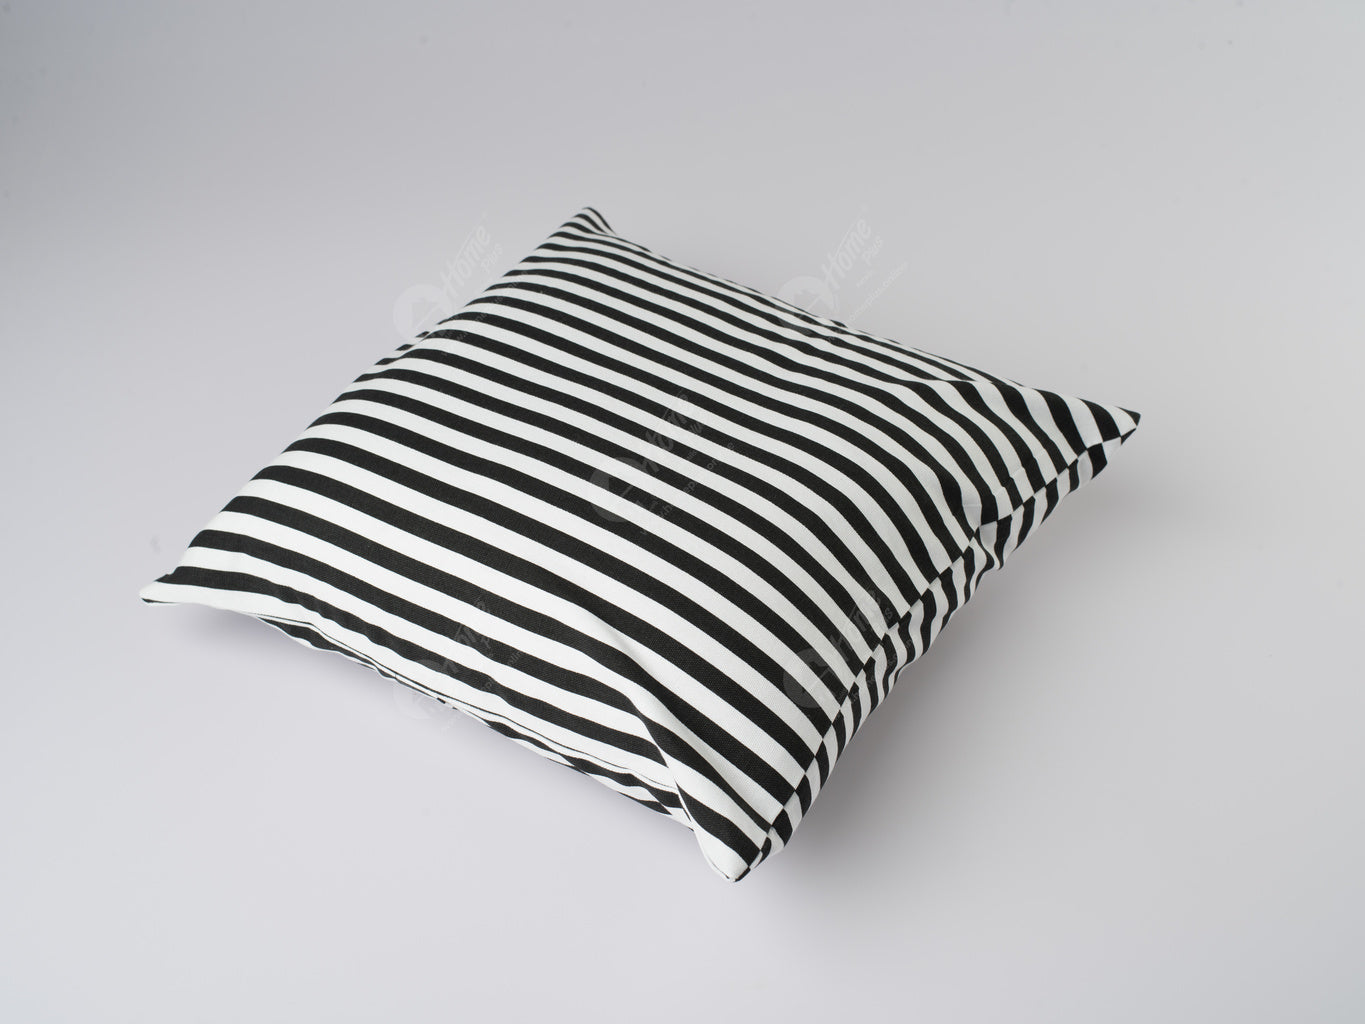 Cushion Cover - Thin Stripe Black